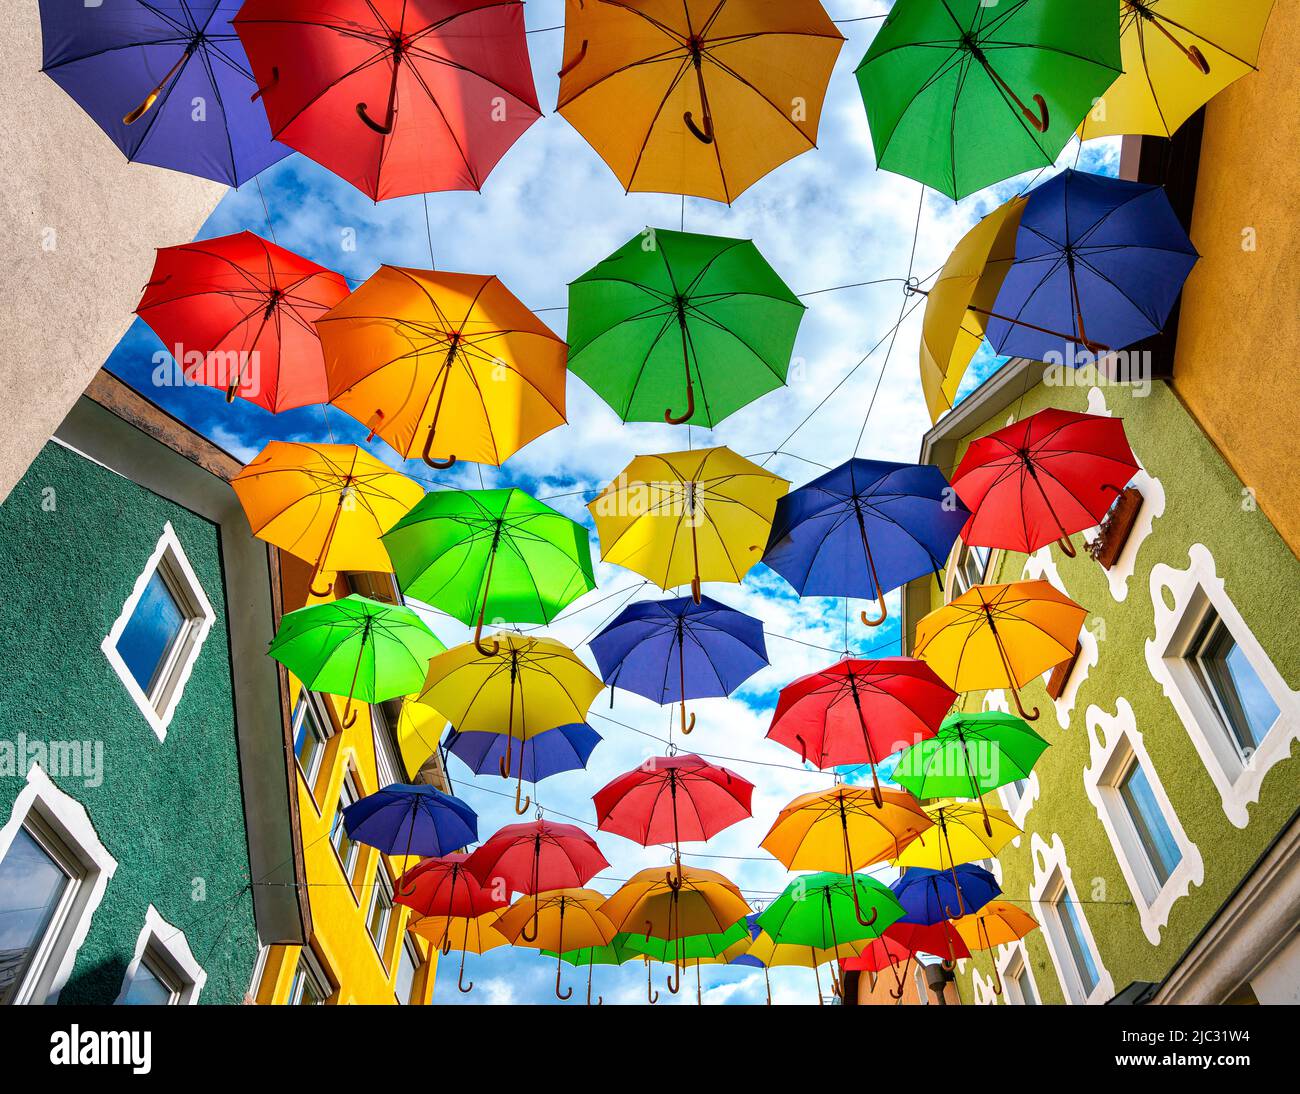 bunte Regenschirme vor blauem Himmel Stock Photo